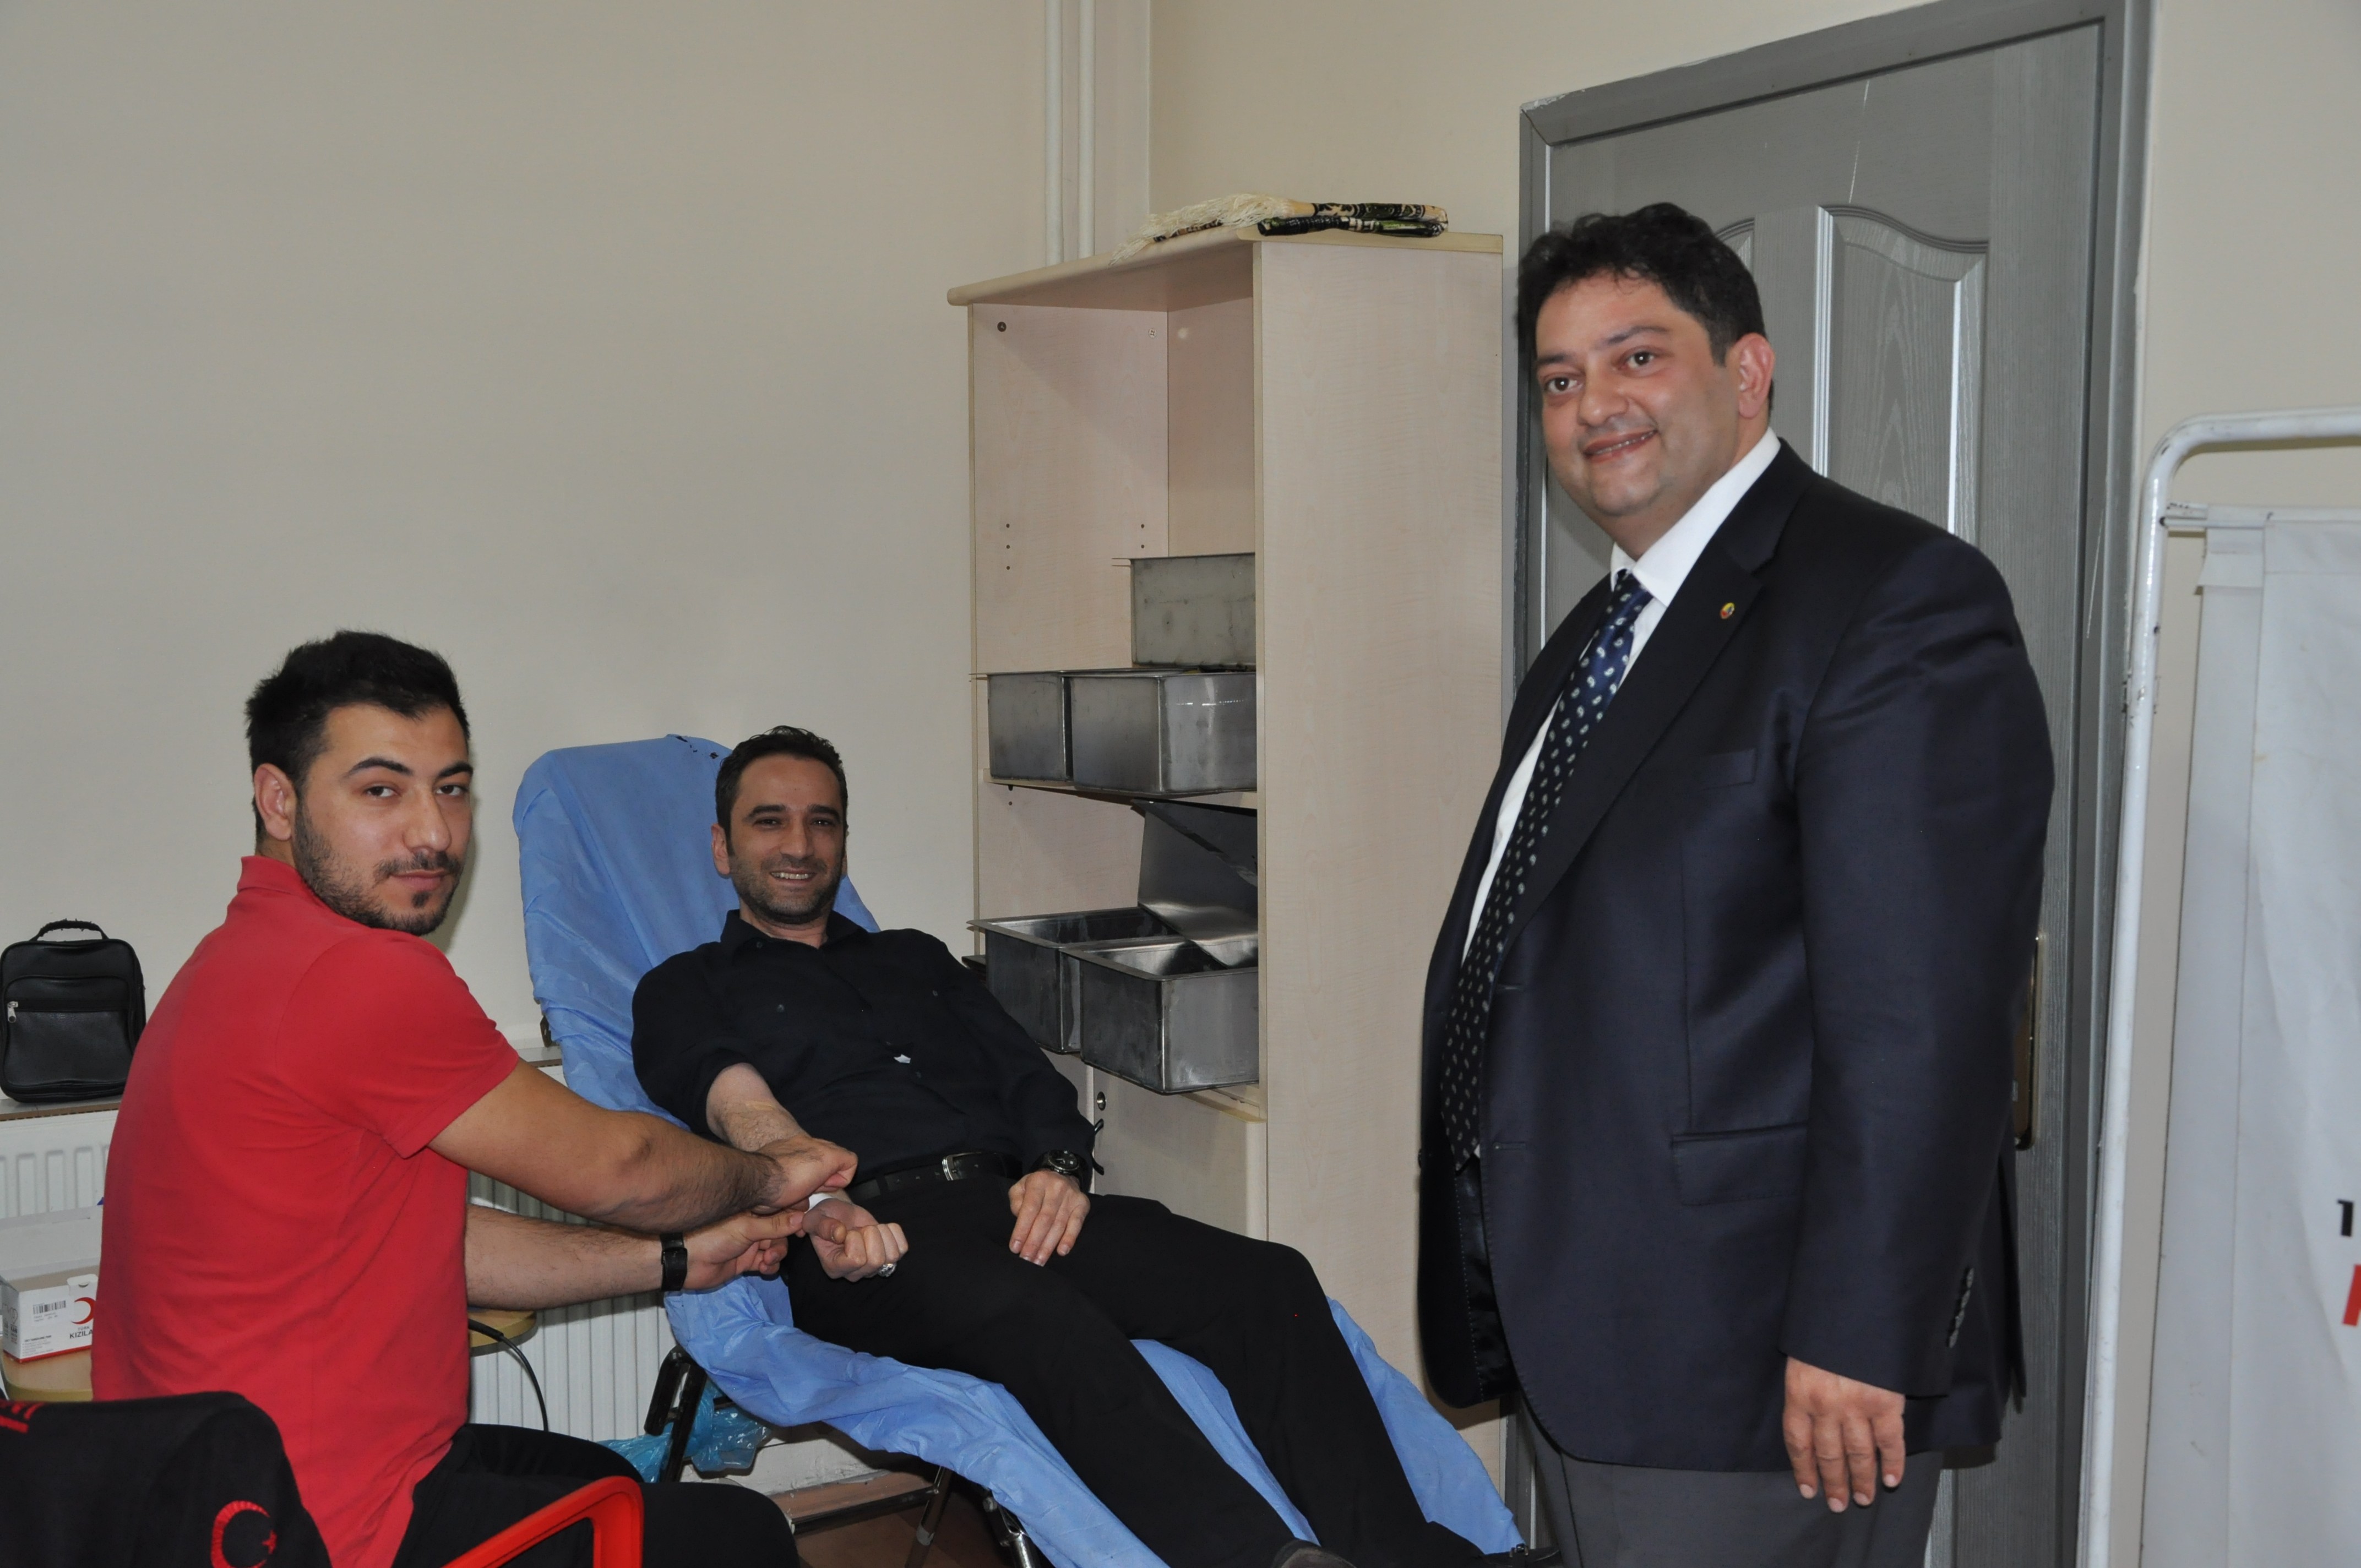 Erzurum Ticaret Borsası’ndan Kan Bağışı kampanyası